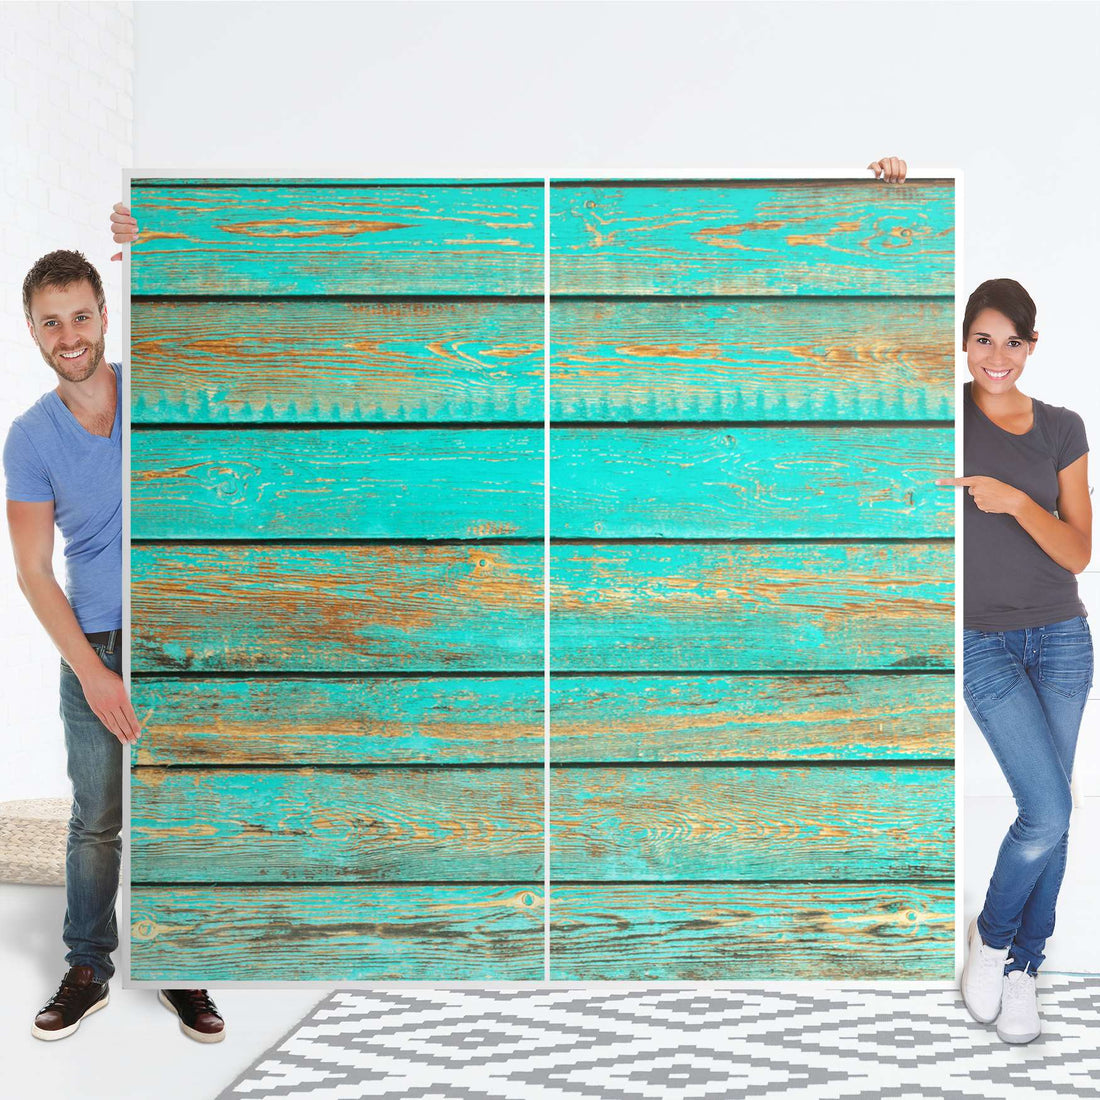 Möbel Klebefolie Wooden Aqua - IKEA Pax Schrank 201 cm Höhe - Schiebetür - Folie